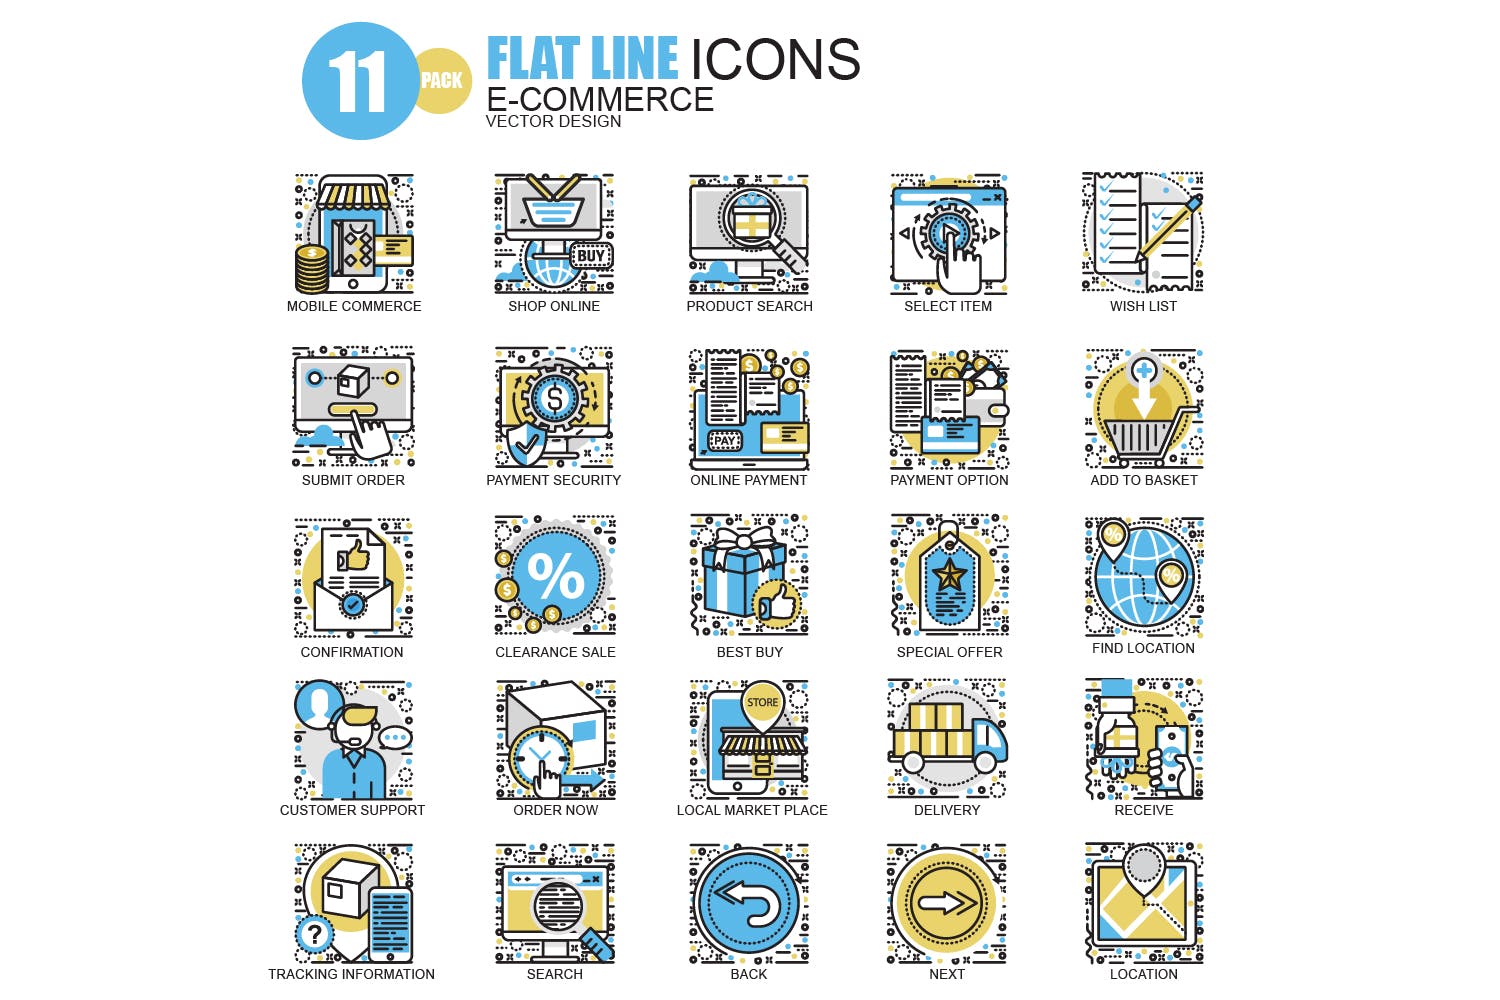 150枚概念主题扁平设计风格矢量线性图标 Line icons插图(5)